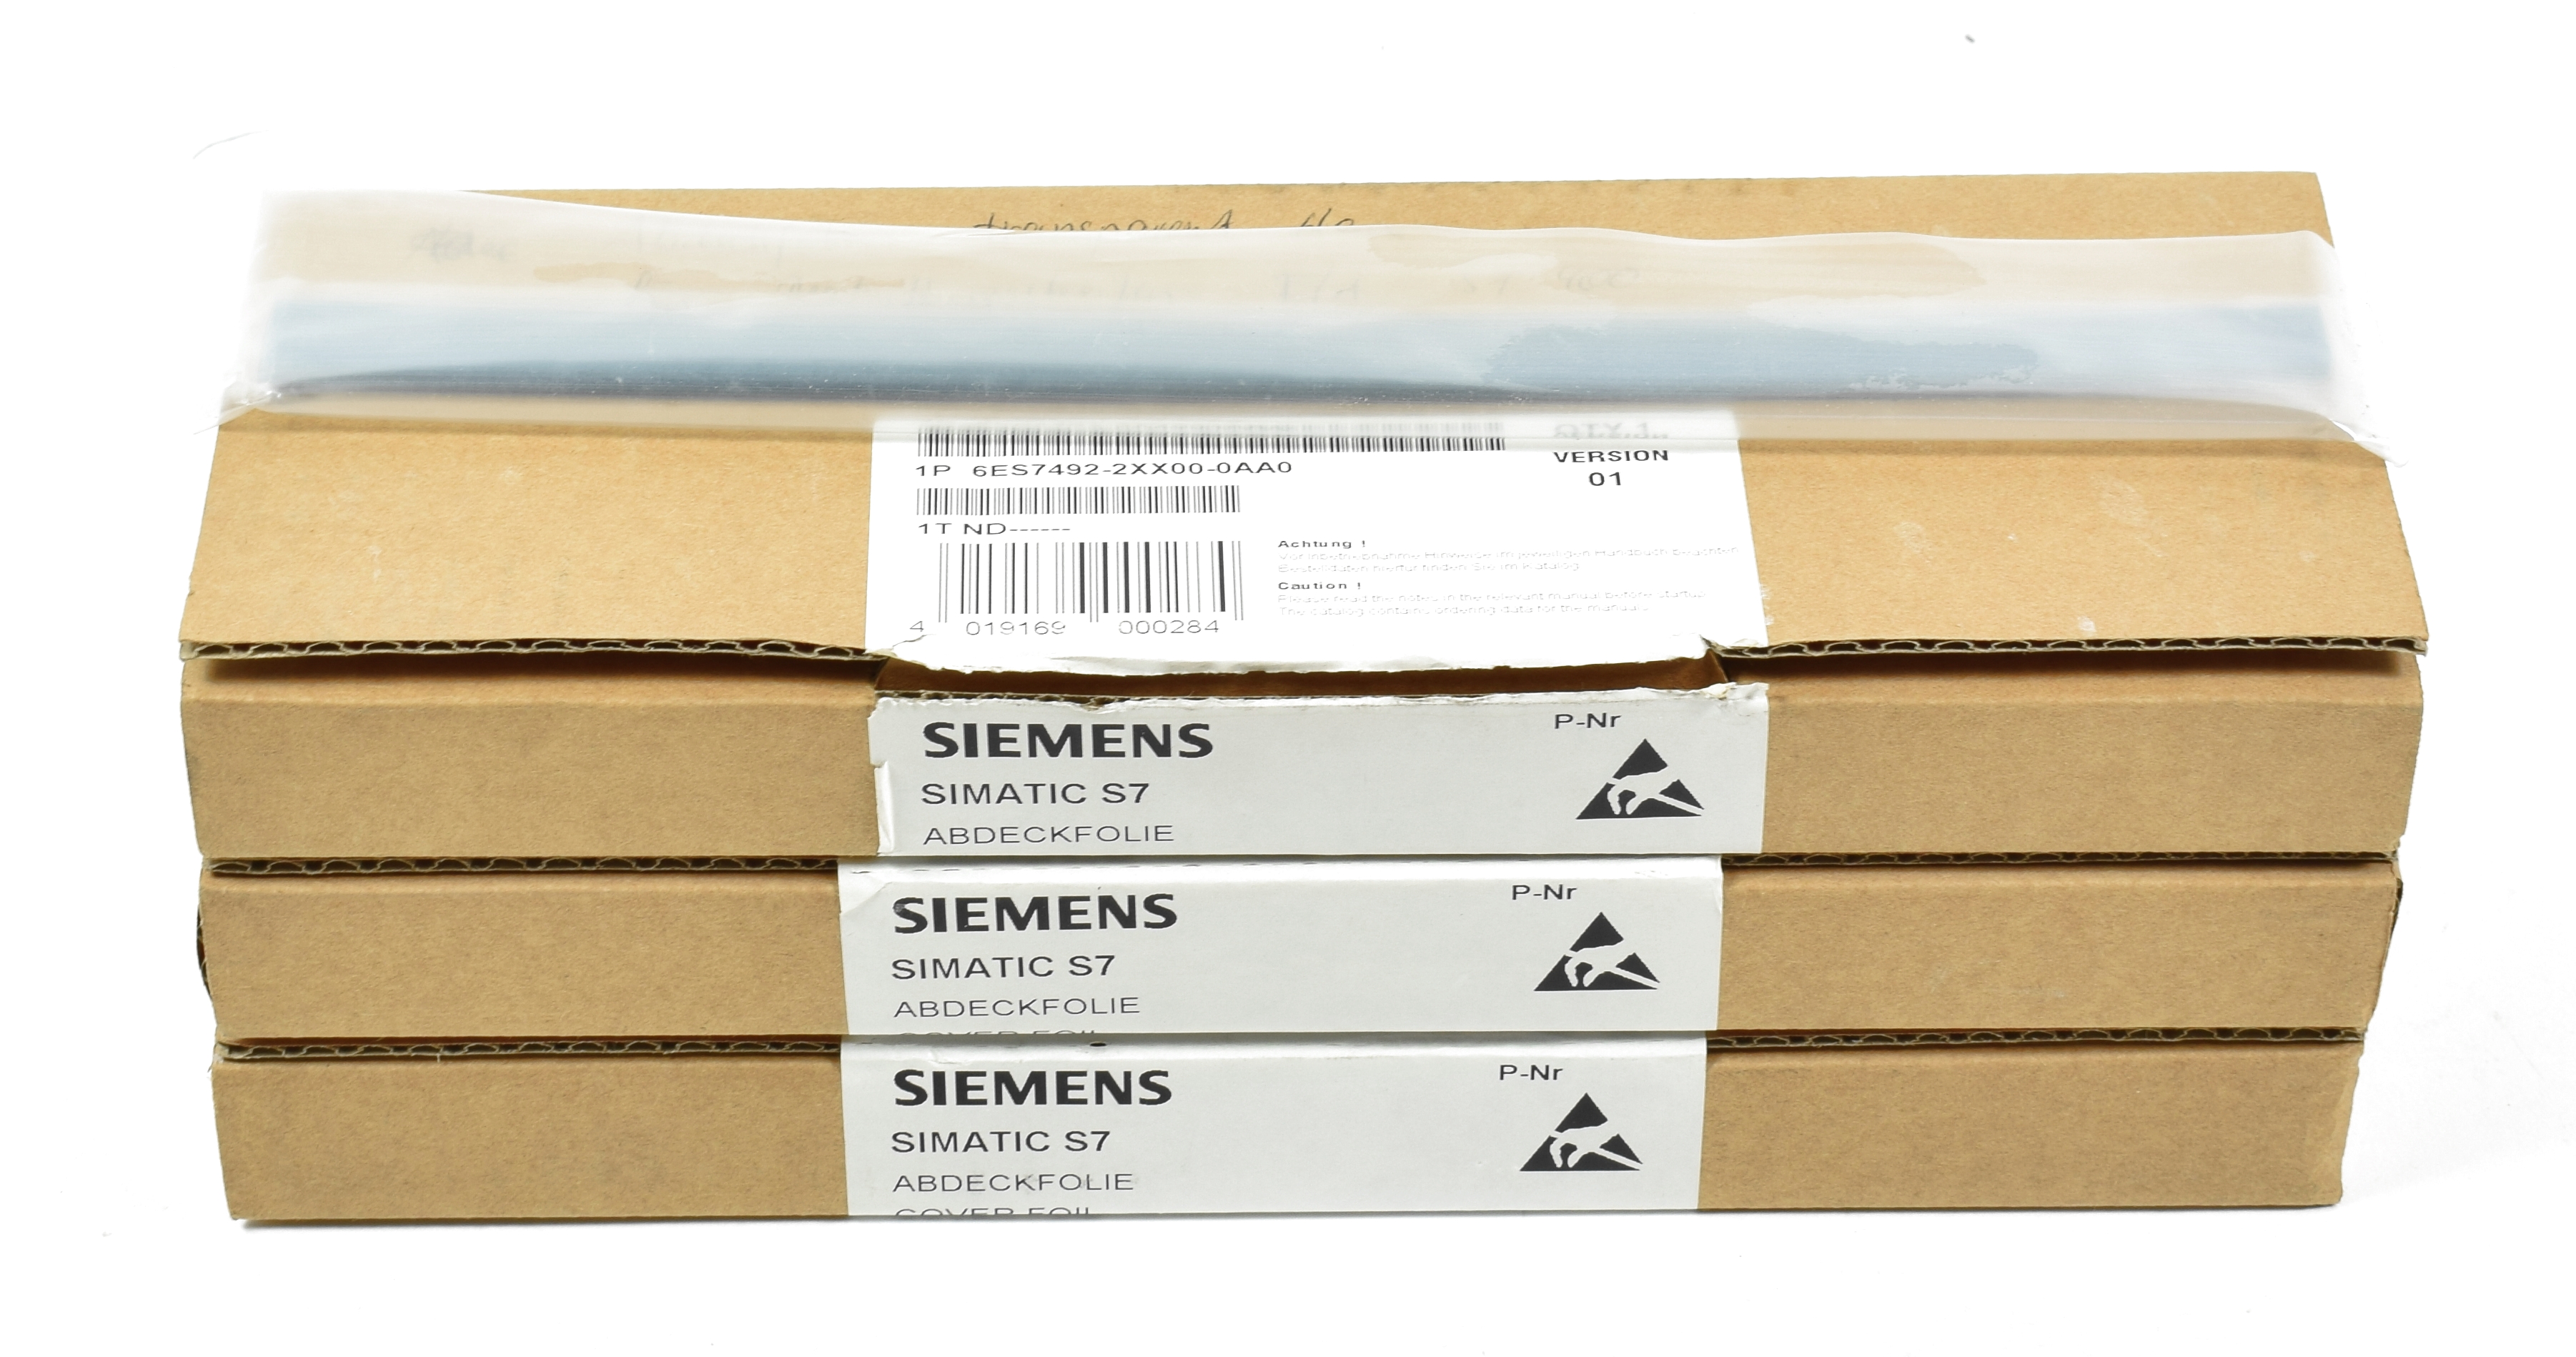 30 x Siemens Simatic S7-400 Abdeckfolie,6ES7  492-2XX00-0AA0,6ES7492-2XX00-0AA0 400er Reihe Siemens Simatic S7  Siemens Hersteller Päbra Gmbh